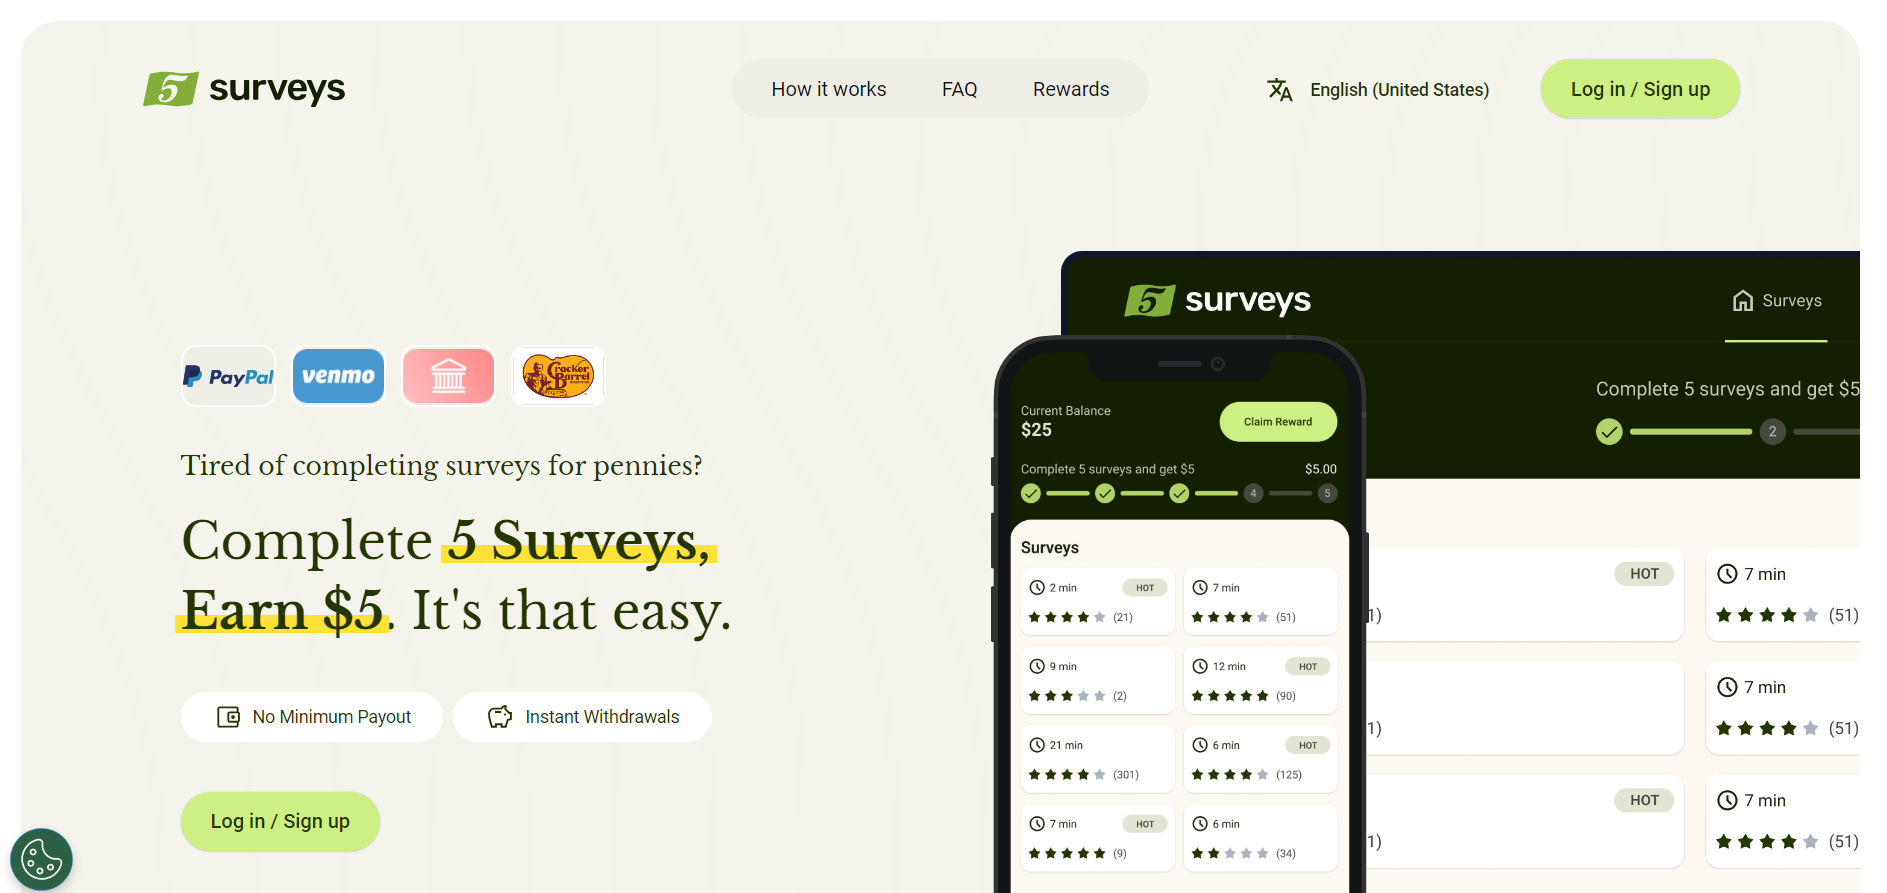 5 Surveys Homepage